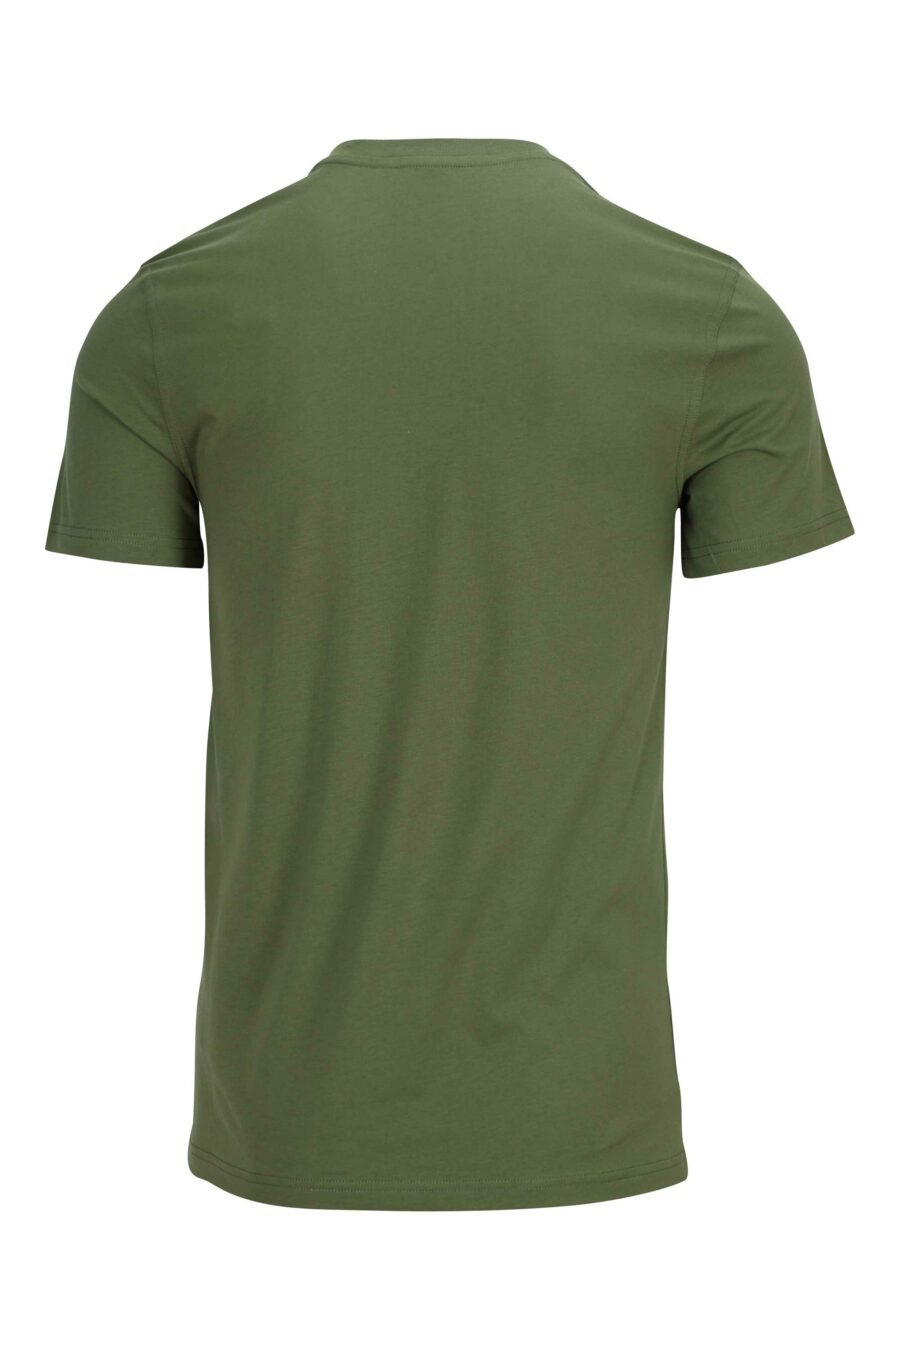 T-shirt vert militaire en coton biologique avec maxilogo "teddy" - 889316854527 1